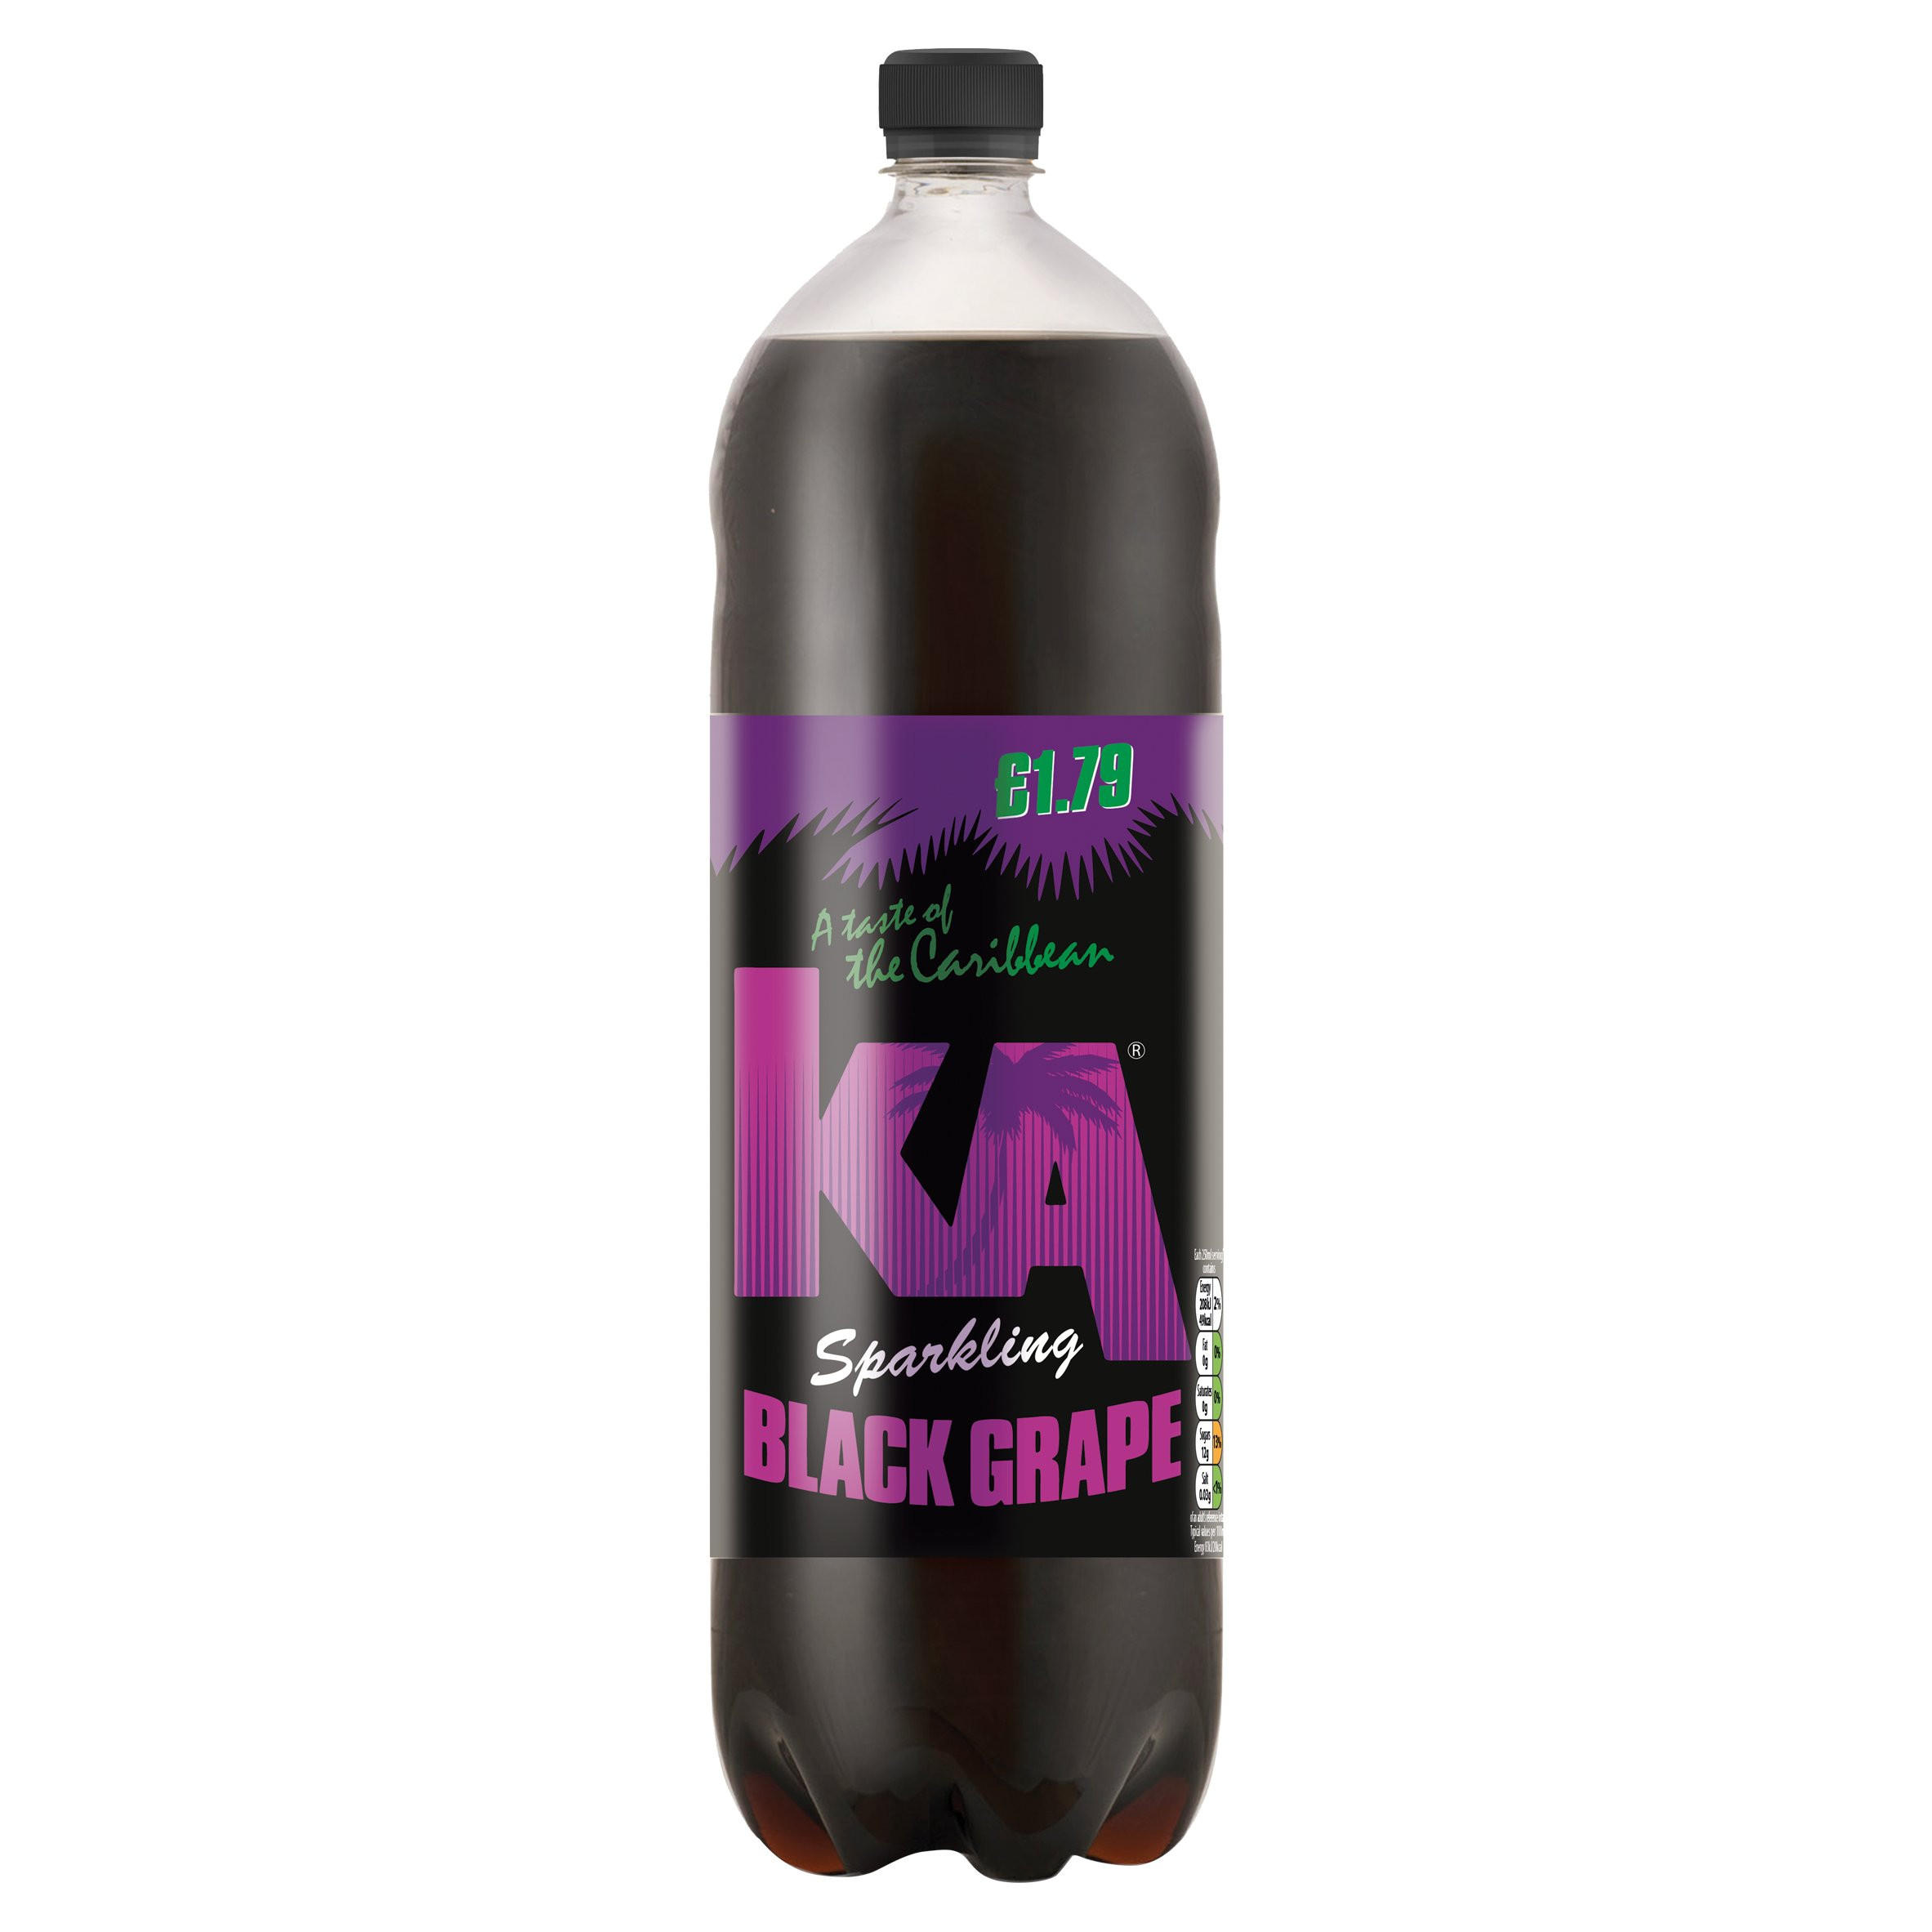 KA Sparkling Black Grape 2L Bottle, PMP £1.79 | Bottled Drinks ...